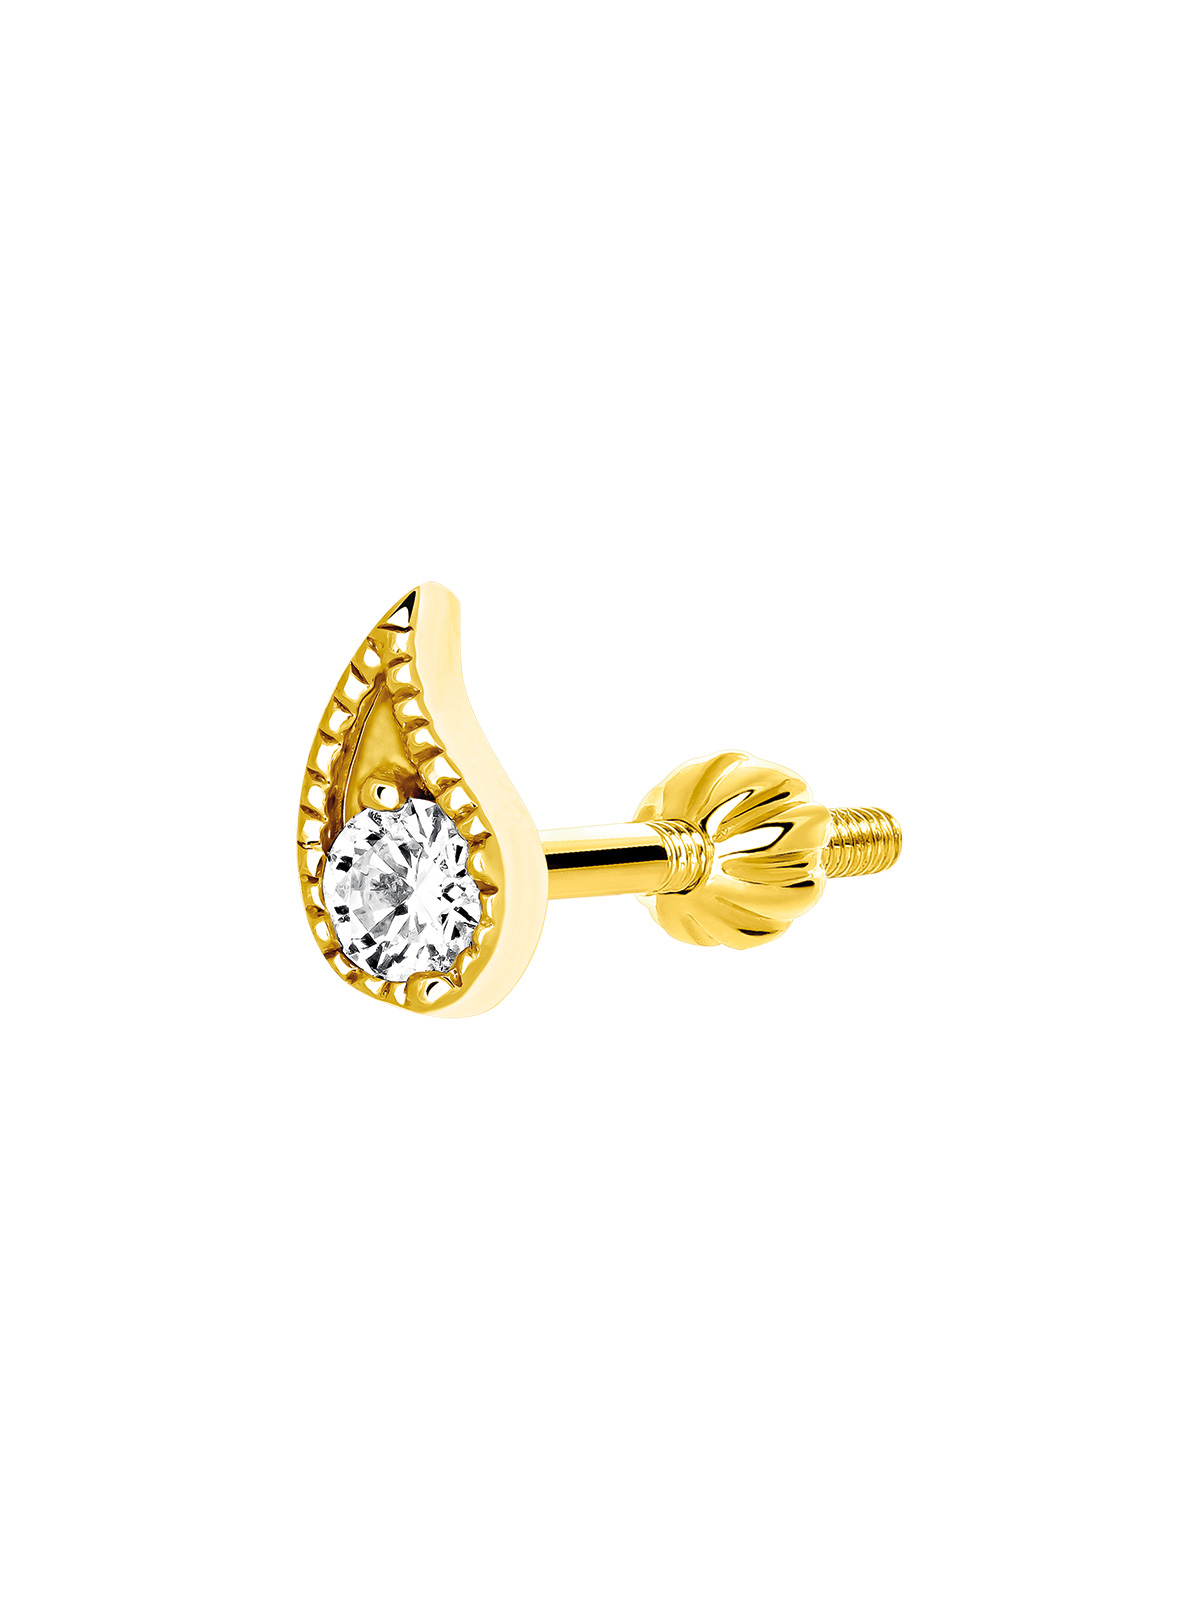 Boucle d'oreille individuelle en or jaune 9K en forme de papillon avec diamant.